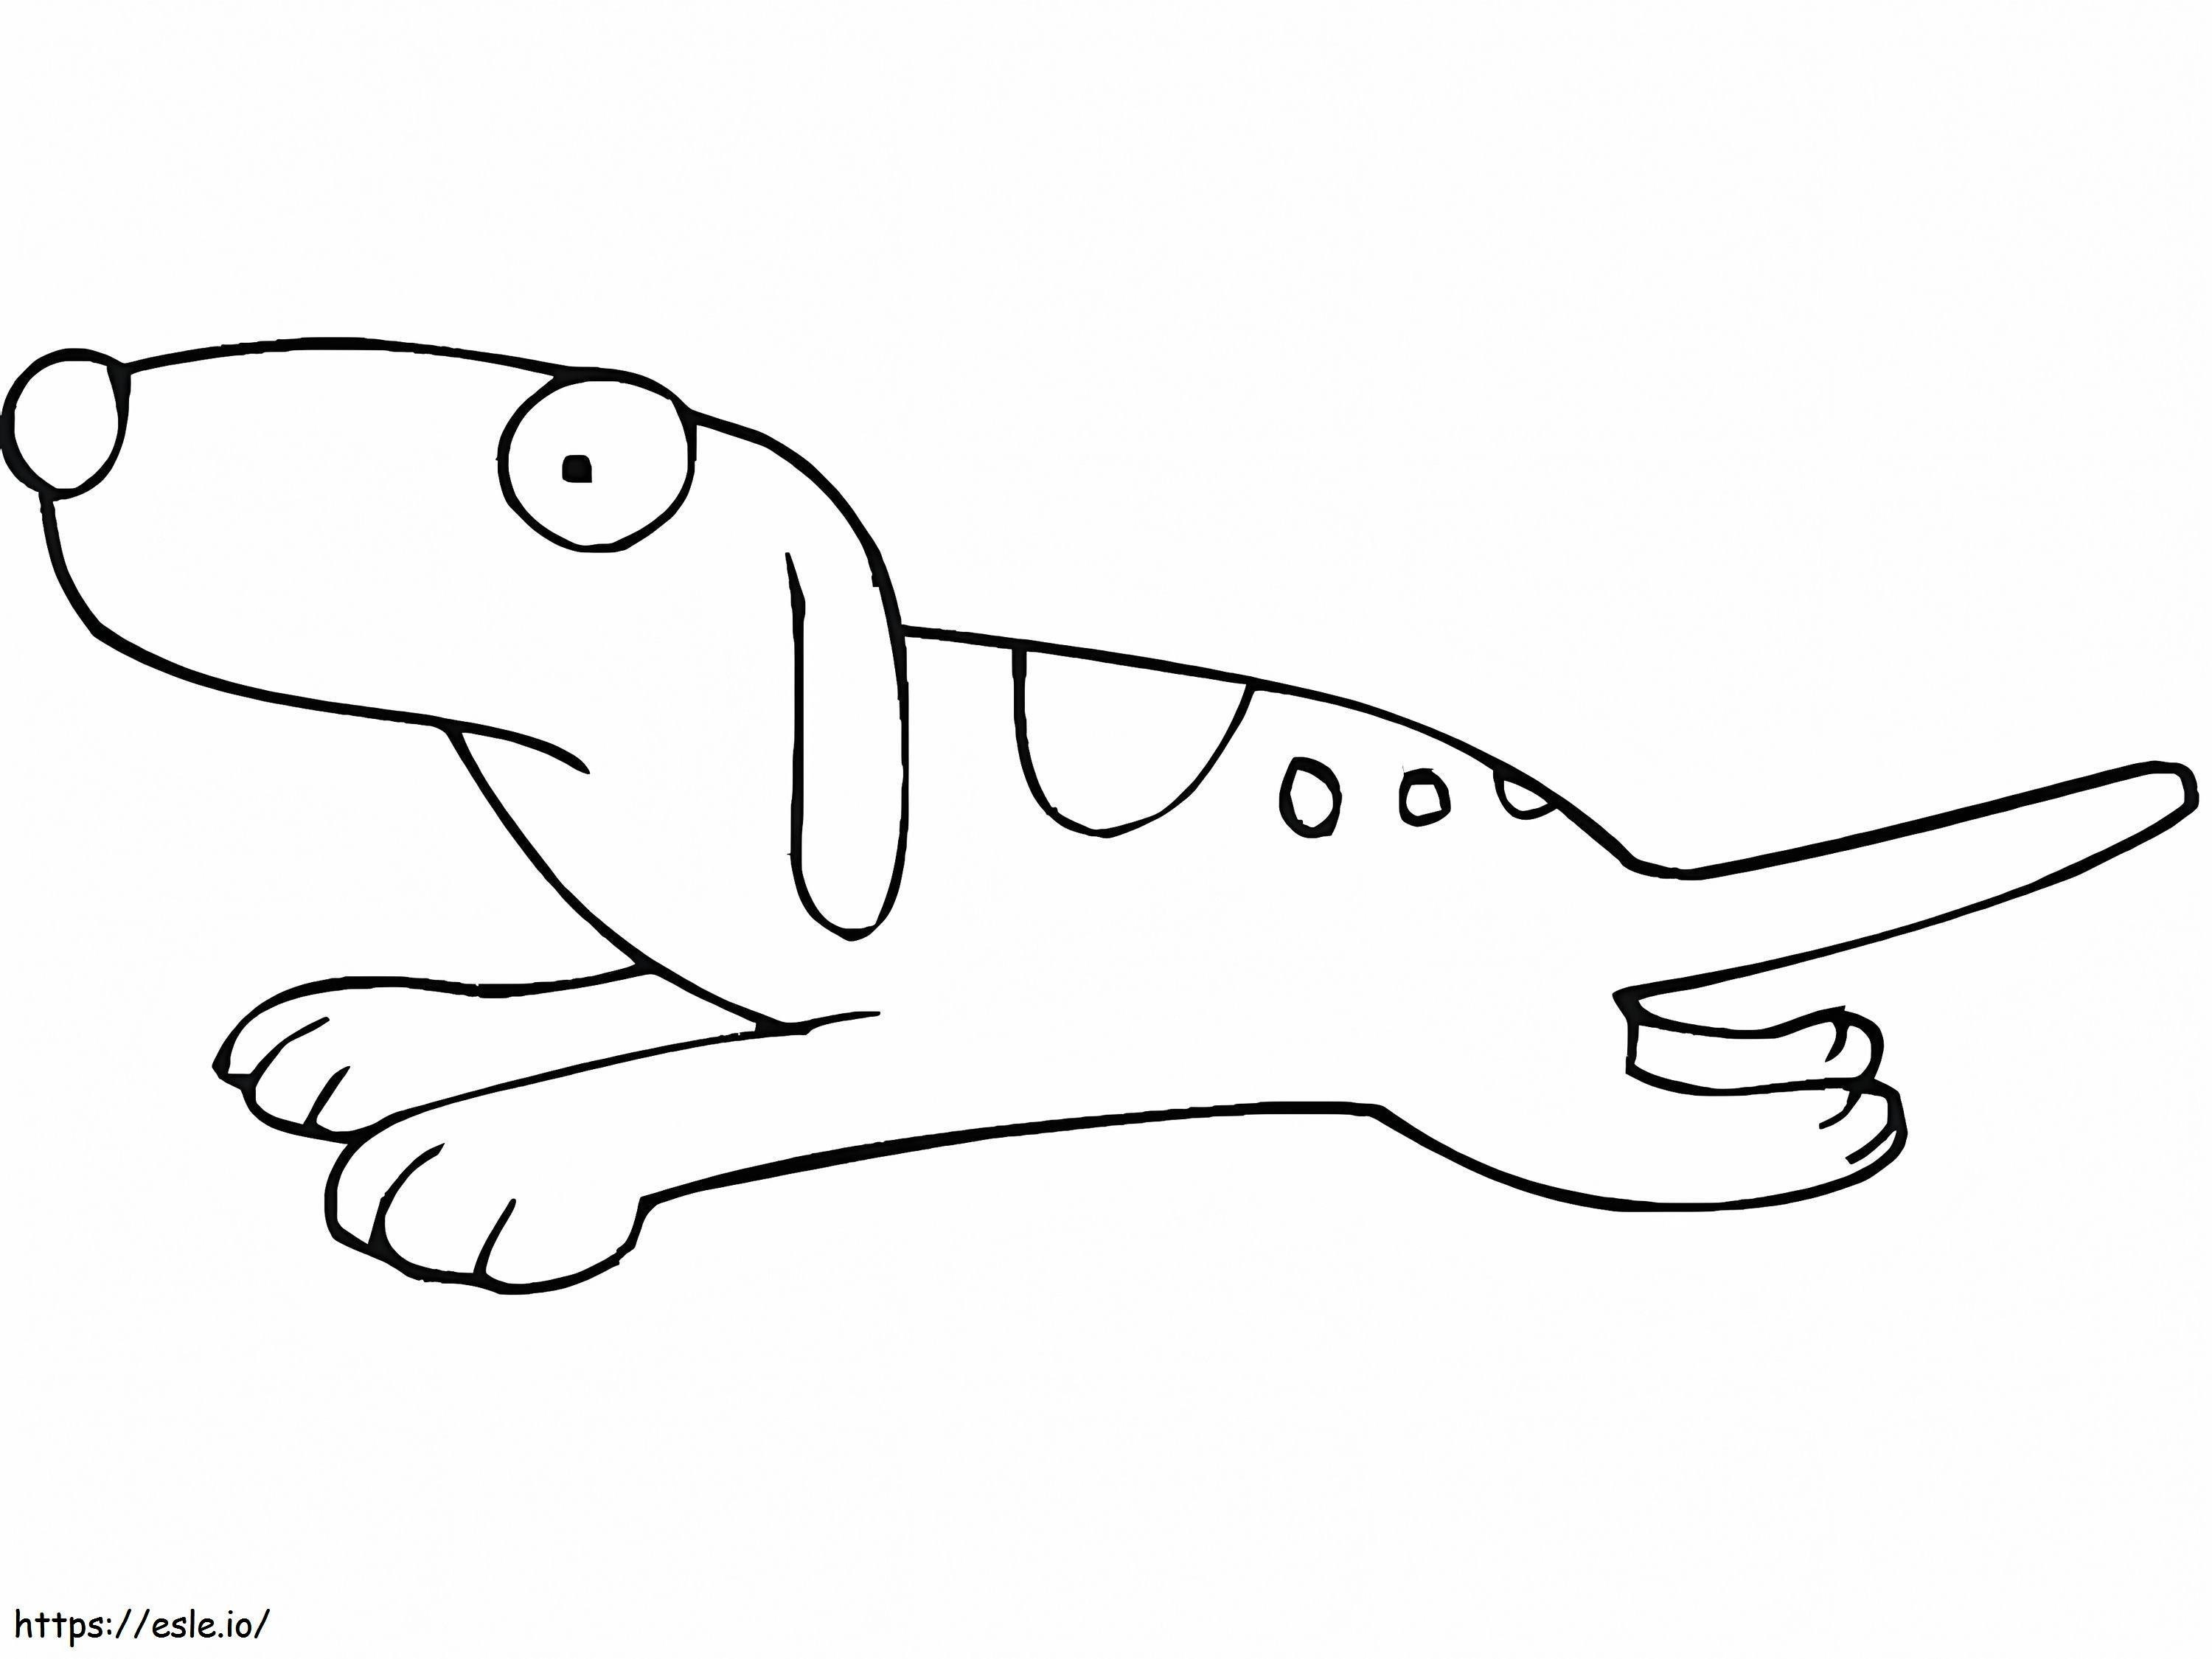 Cartone Animato Di Un Cane In Movimento da colorare